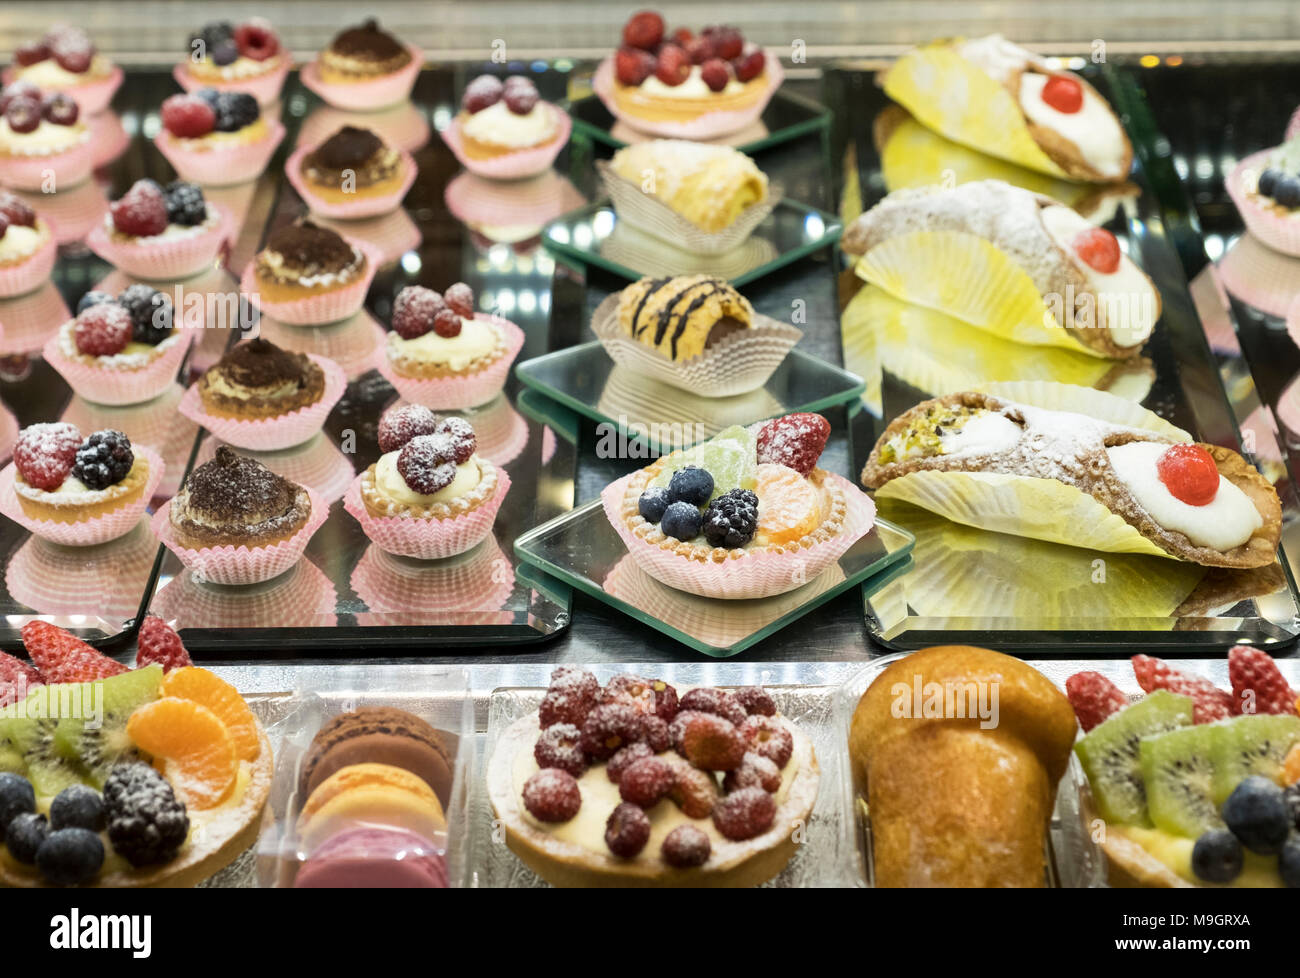 Amplia selección de bollería y pastelería en la pantalla de cristal refrigerada vitrina interior café restaurante italiano, Roma, Italia Foto de stock